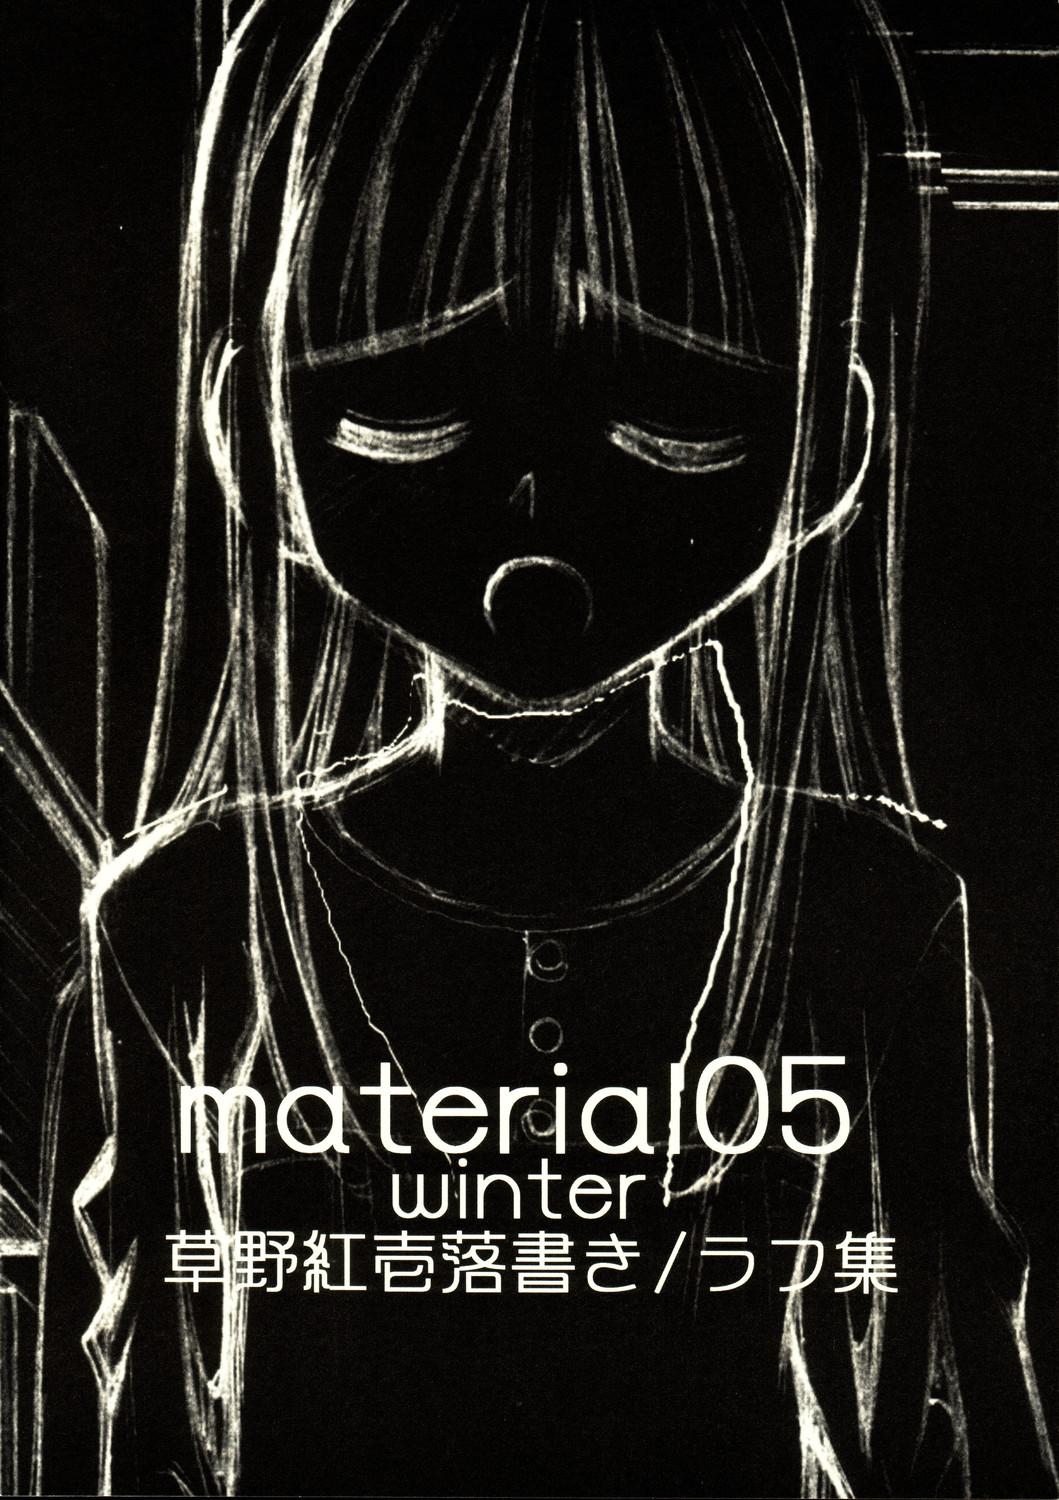 material05 winter 15